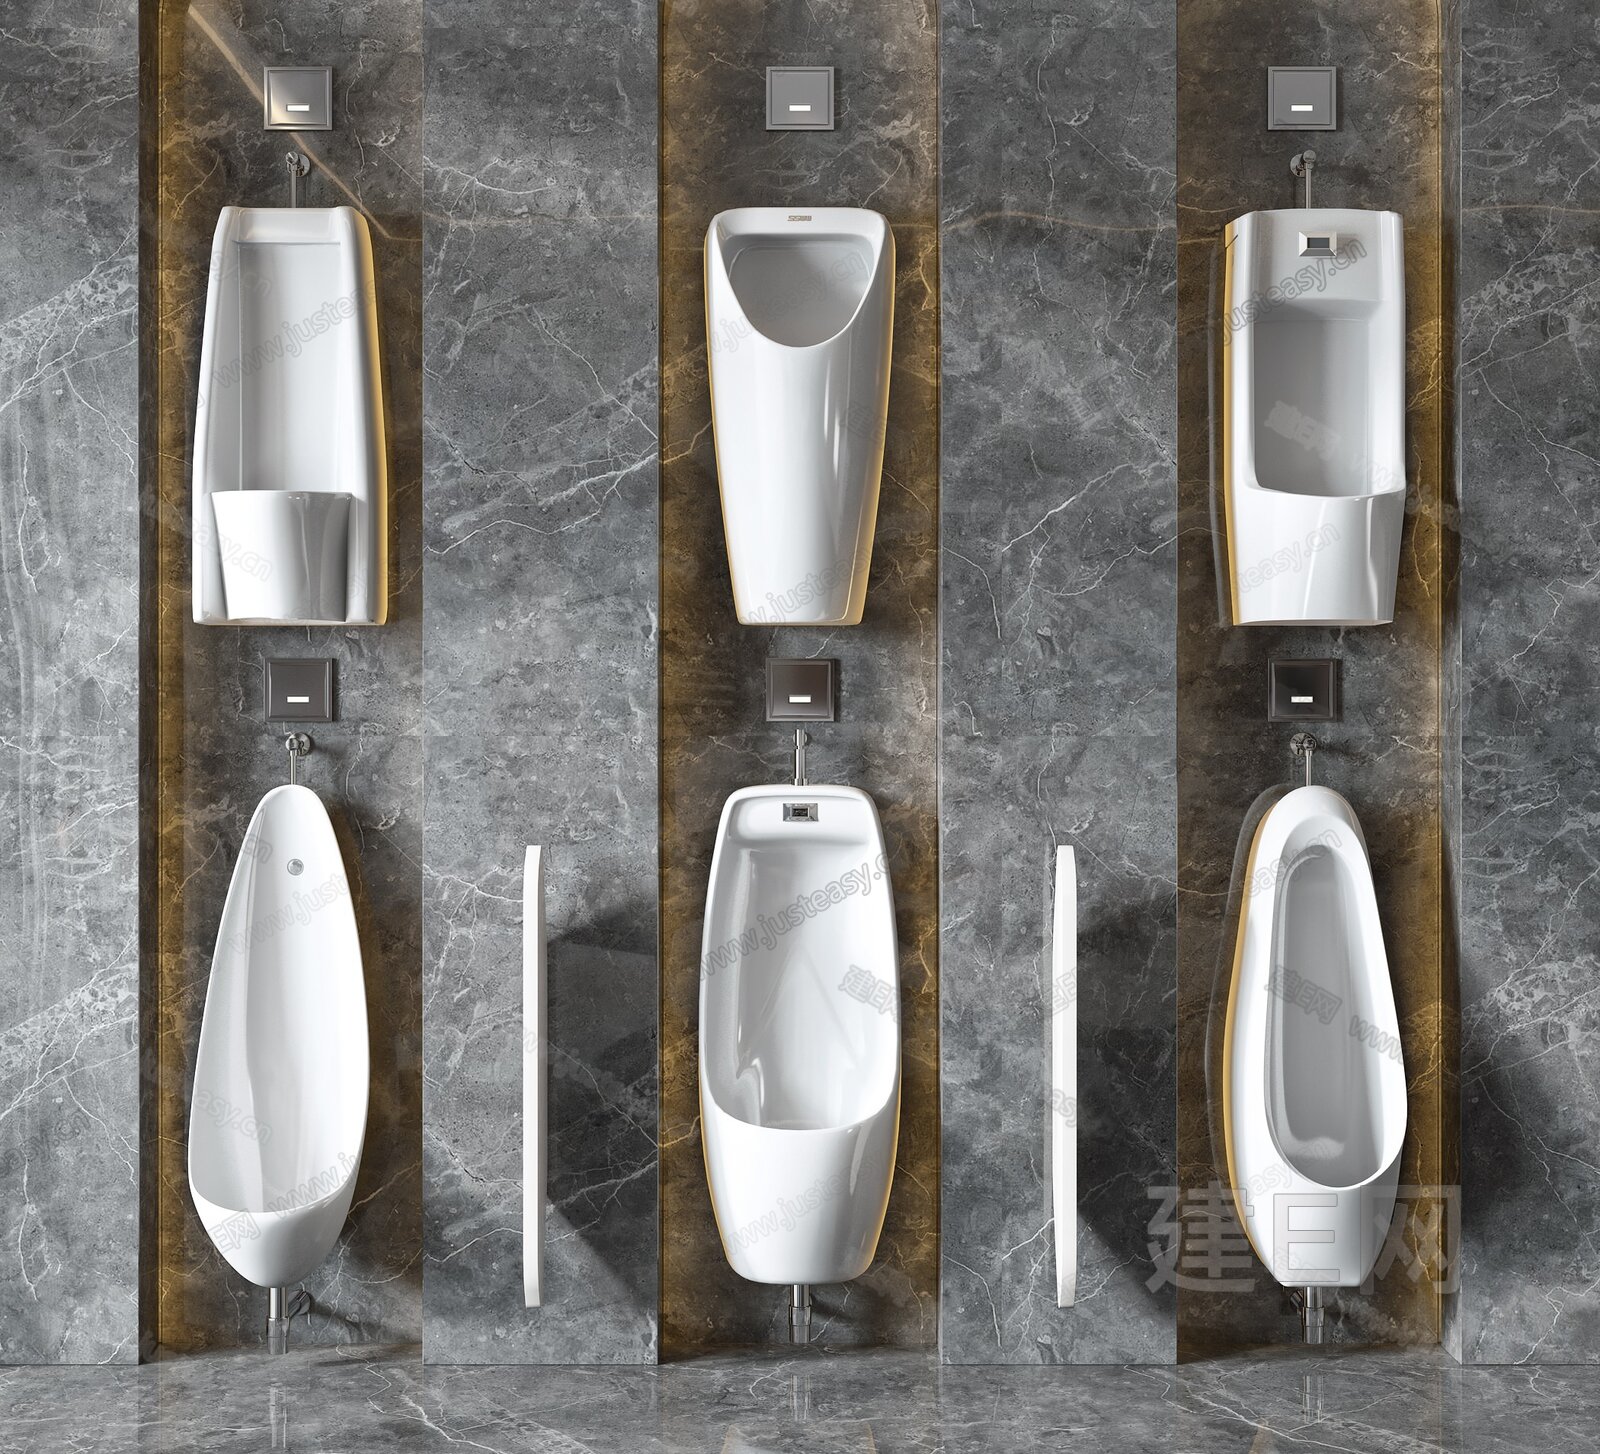 北京小学男卫生间设计的不锈钢小便槽 - 知乎